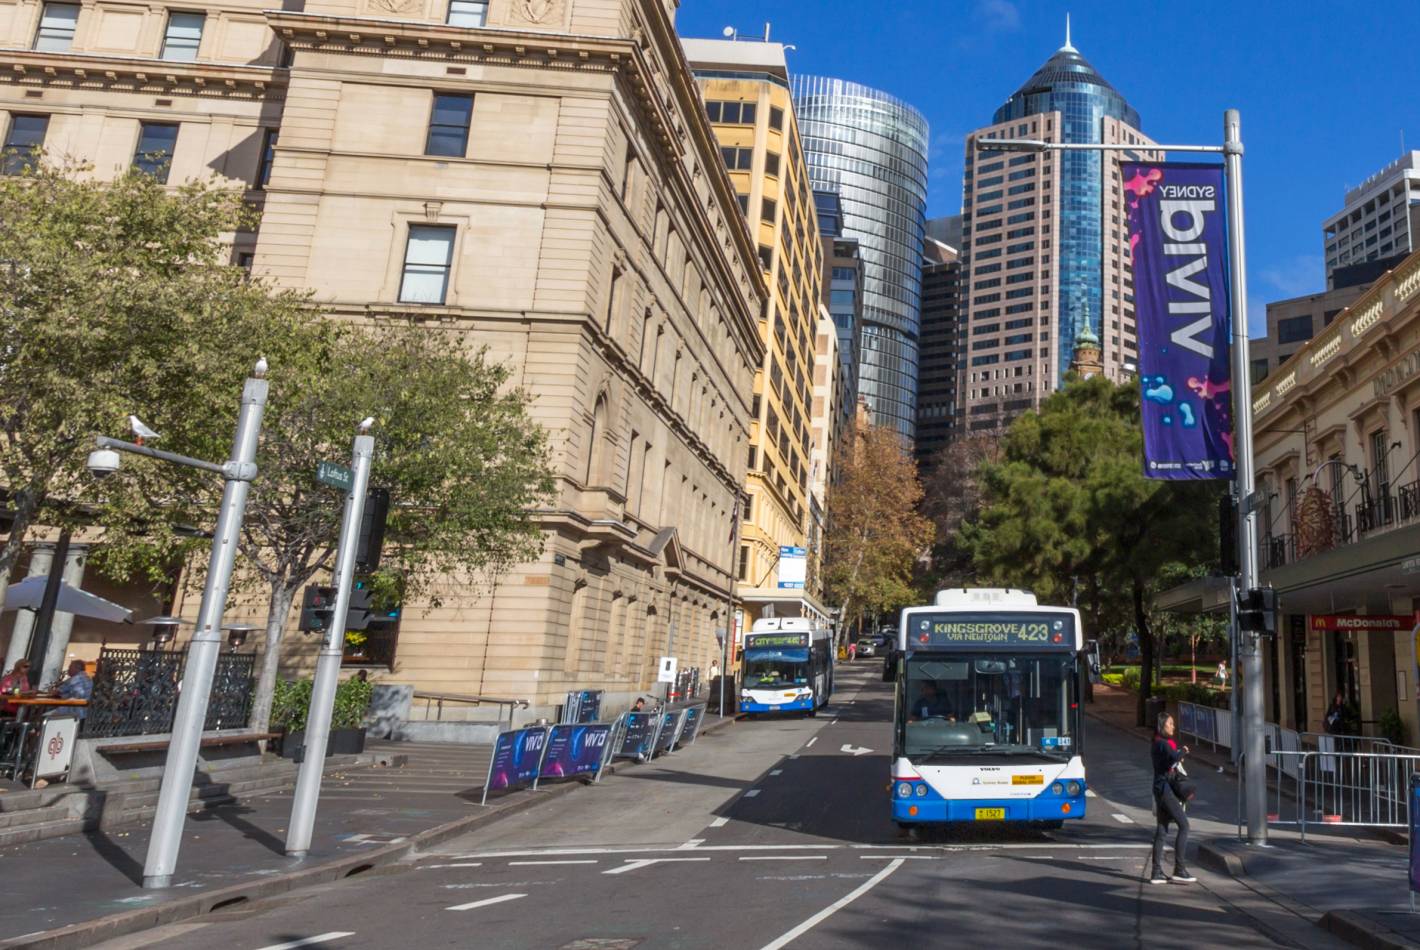 Sydney Metropolitan Bus Contract 1 - Outer Western Suburbs